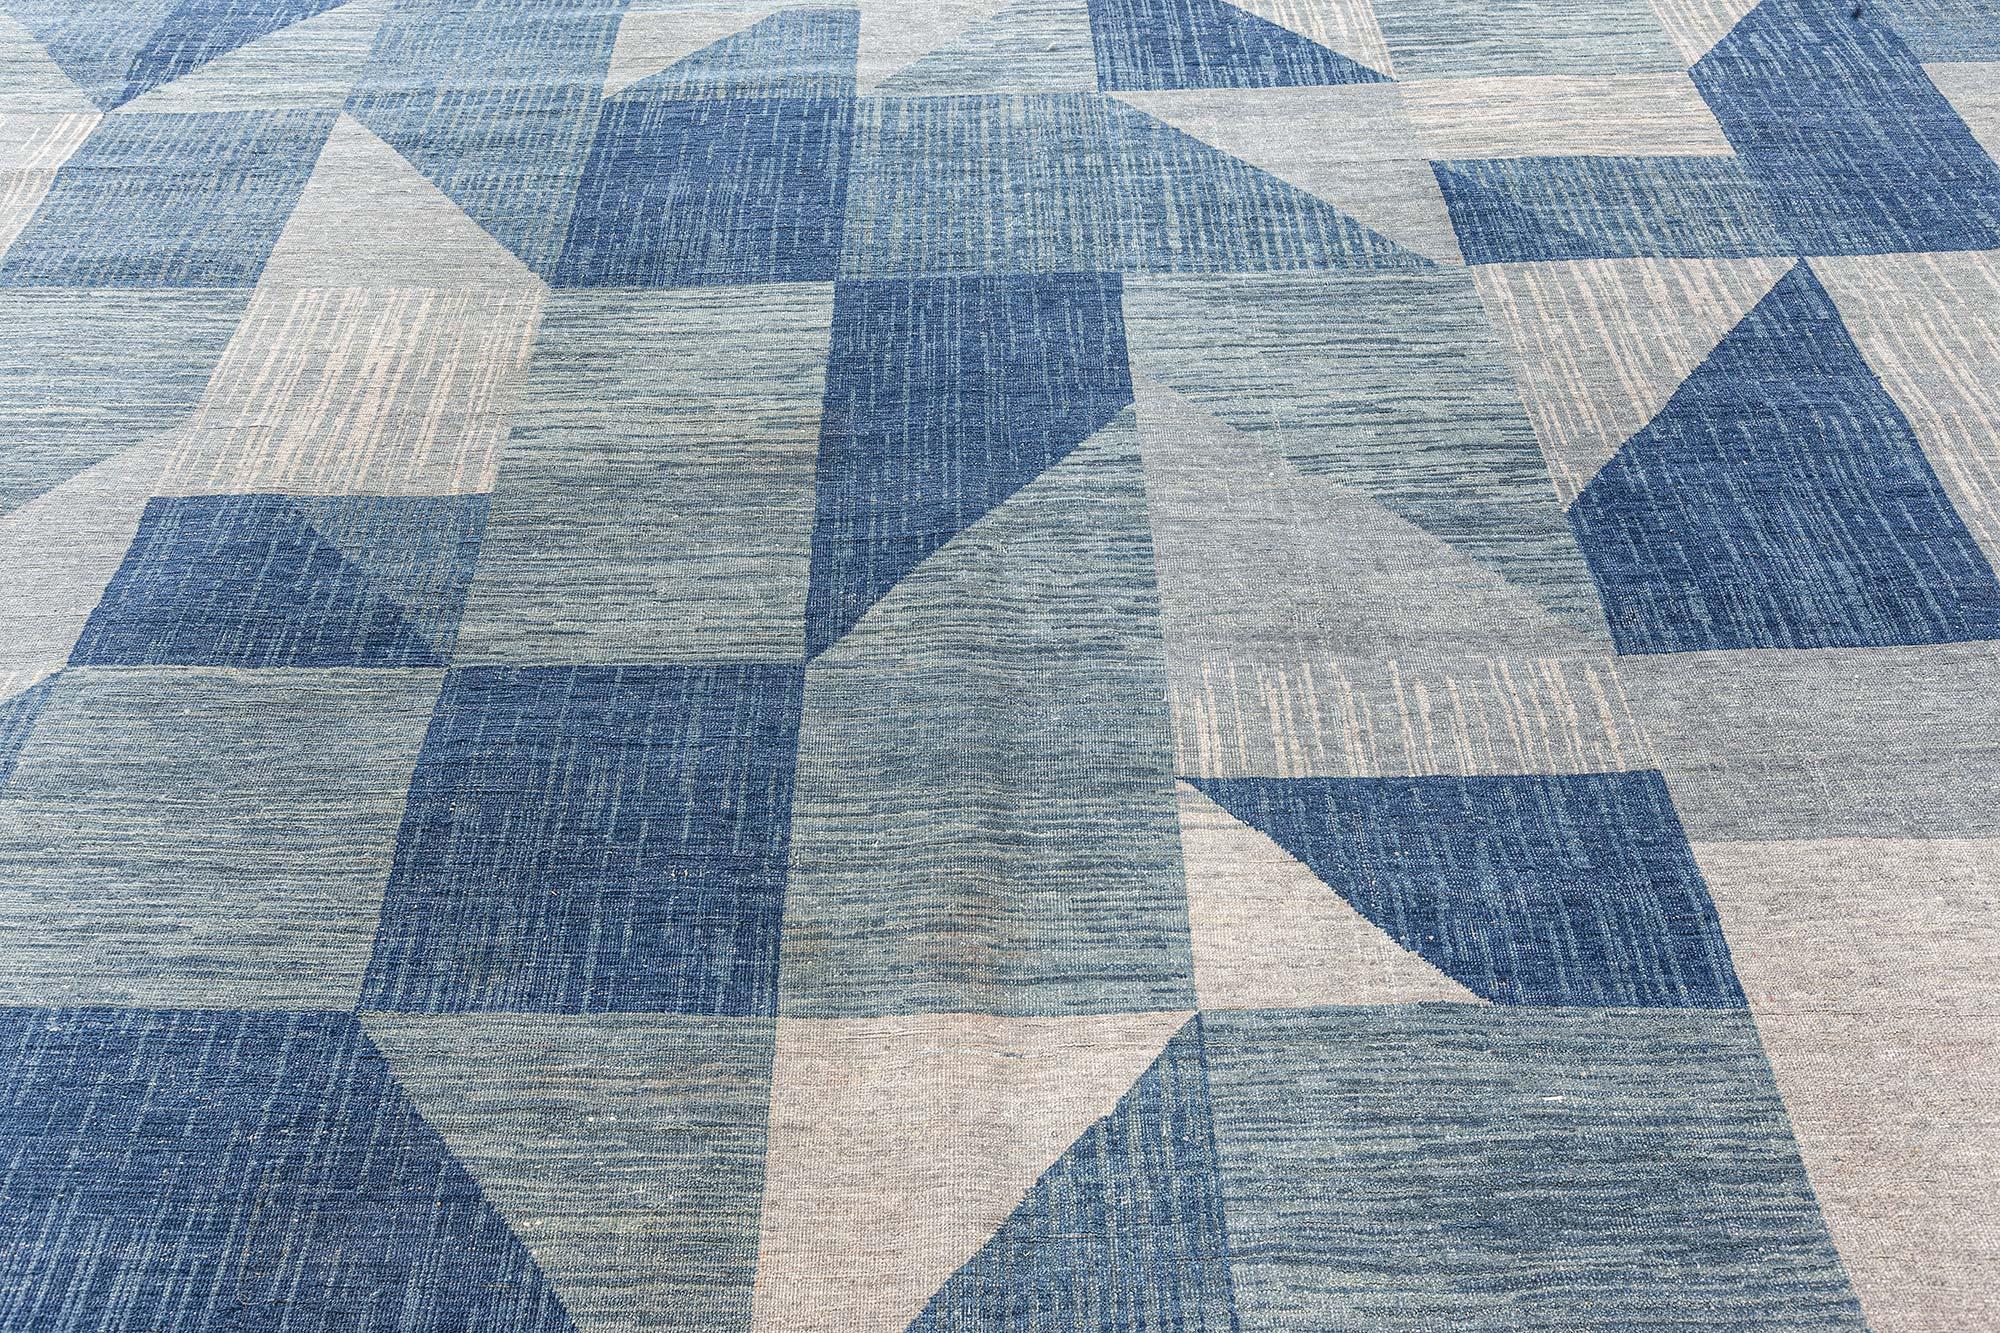 Zeitgenössischer geometrischer Teppich von Doris Leslie Blau.
Größe: 11'10